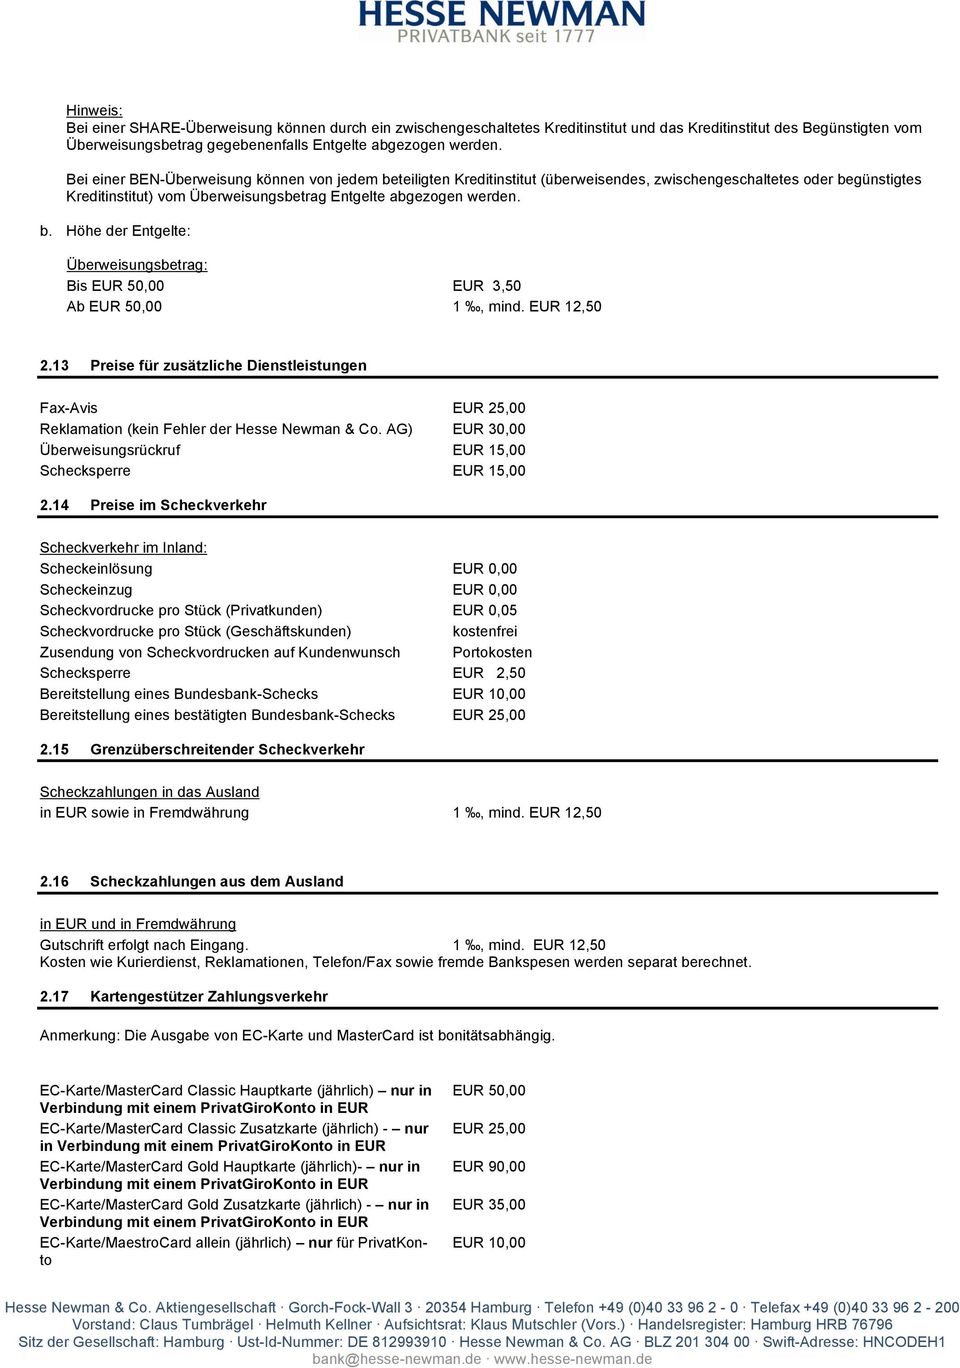 EUR 12,50 2.13 Preise für zusätzliche Dienstleistungen Fax-Avis EUR 25,00 Reklamation (kein Fehler der Hesse Newman & Co. AG) EUR 30,00 Überweisungsrückruf EUR 15,00 Schecksperre EUR 15,00 2.